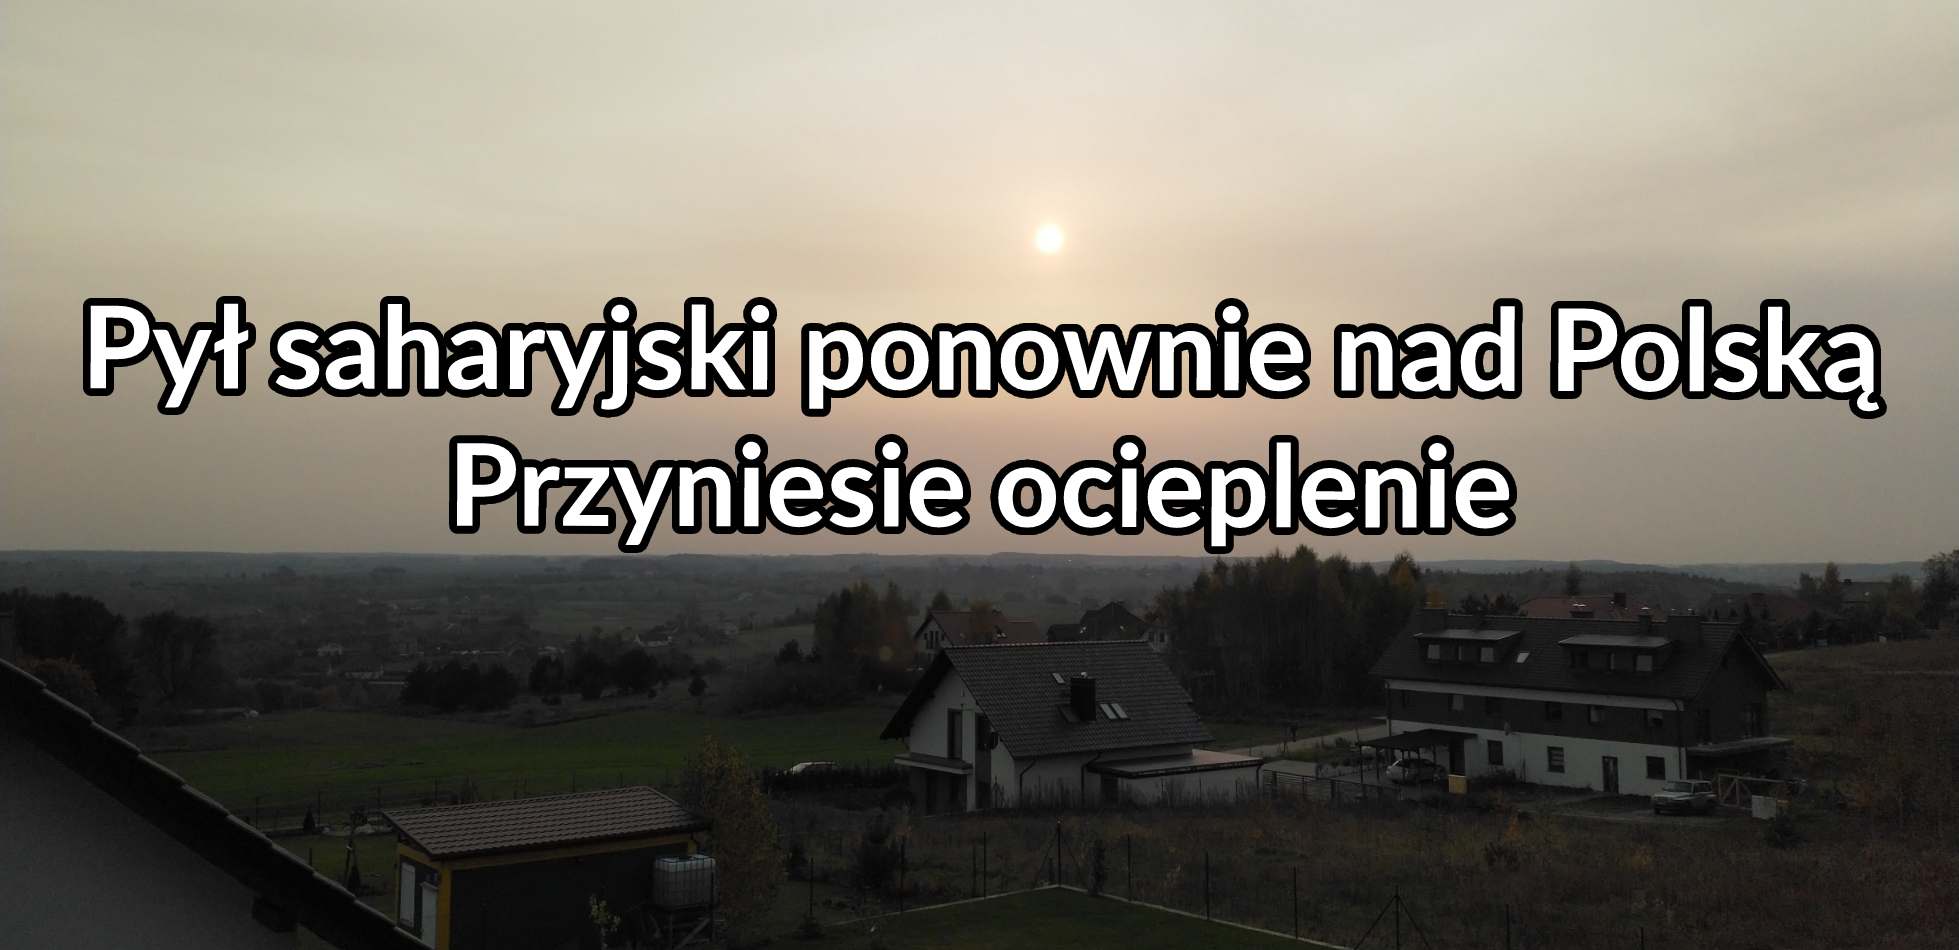 Pył saharyjski ponownie pojawi się w Polsce. Kiedy?